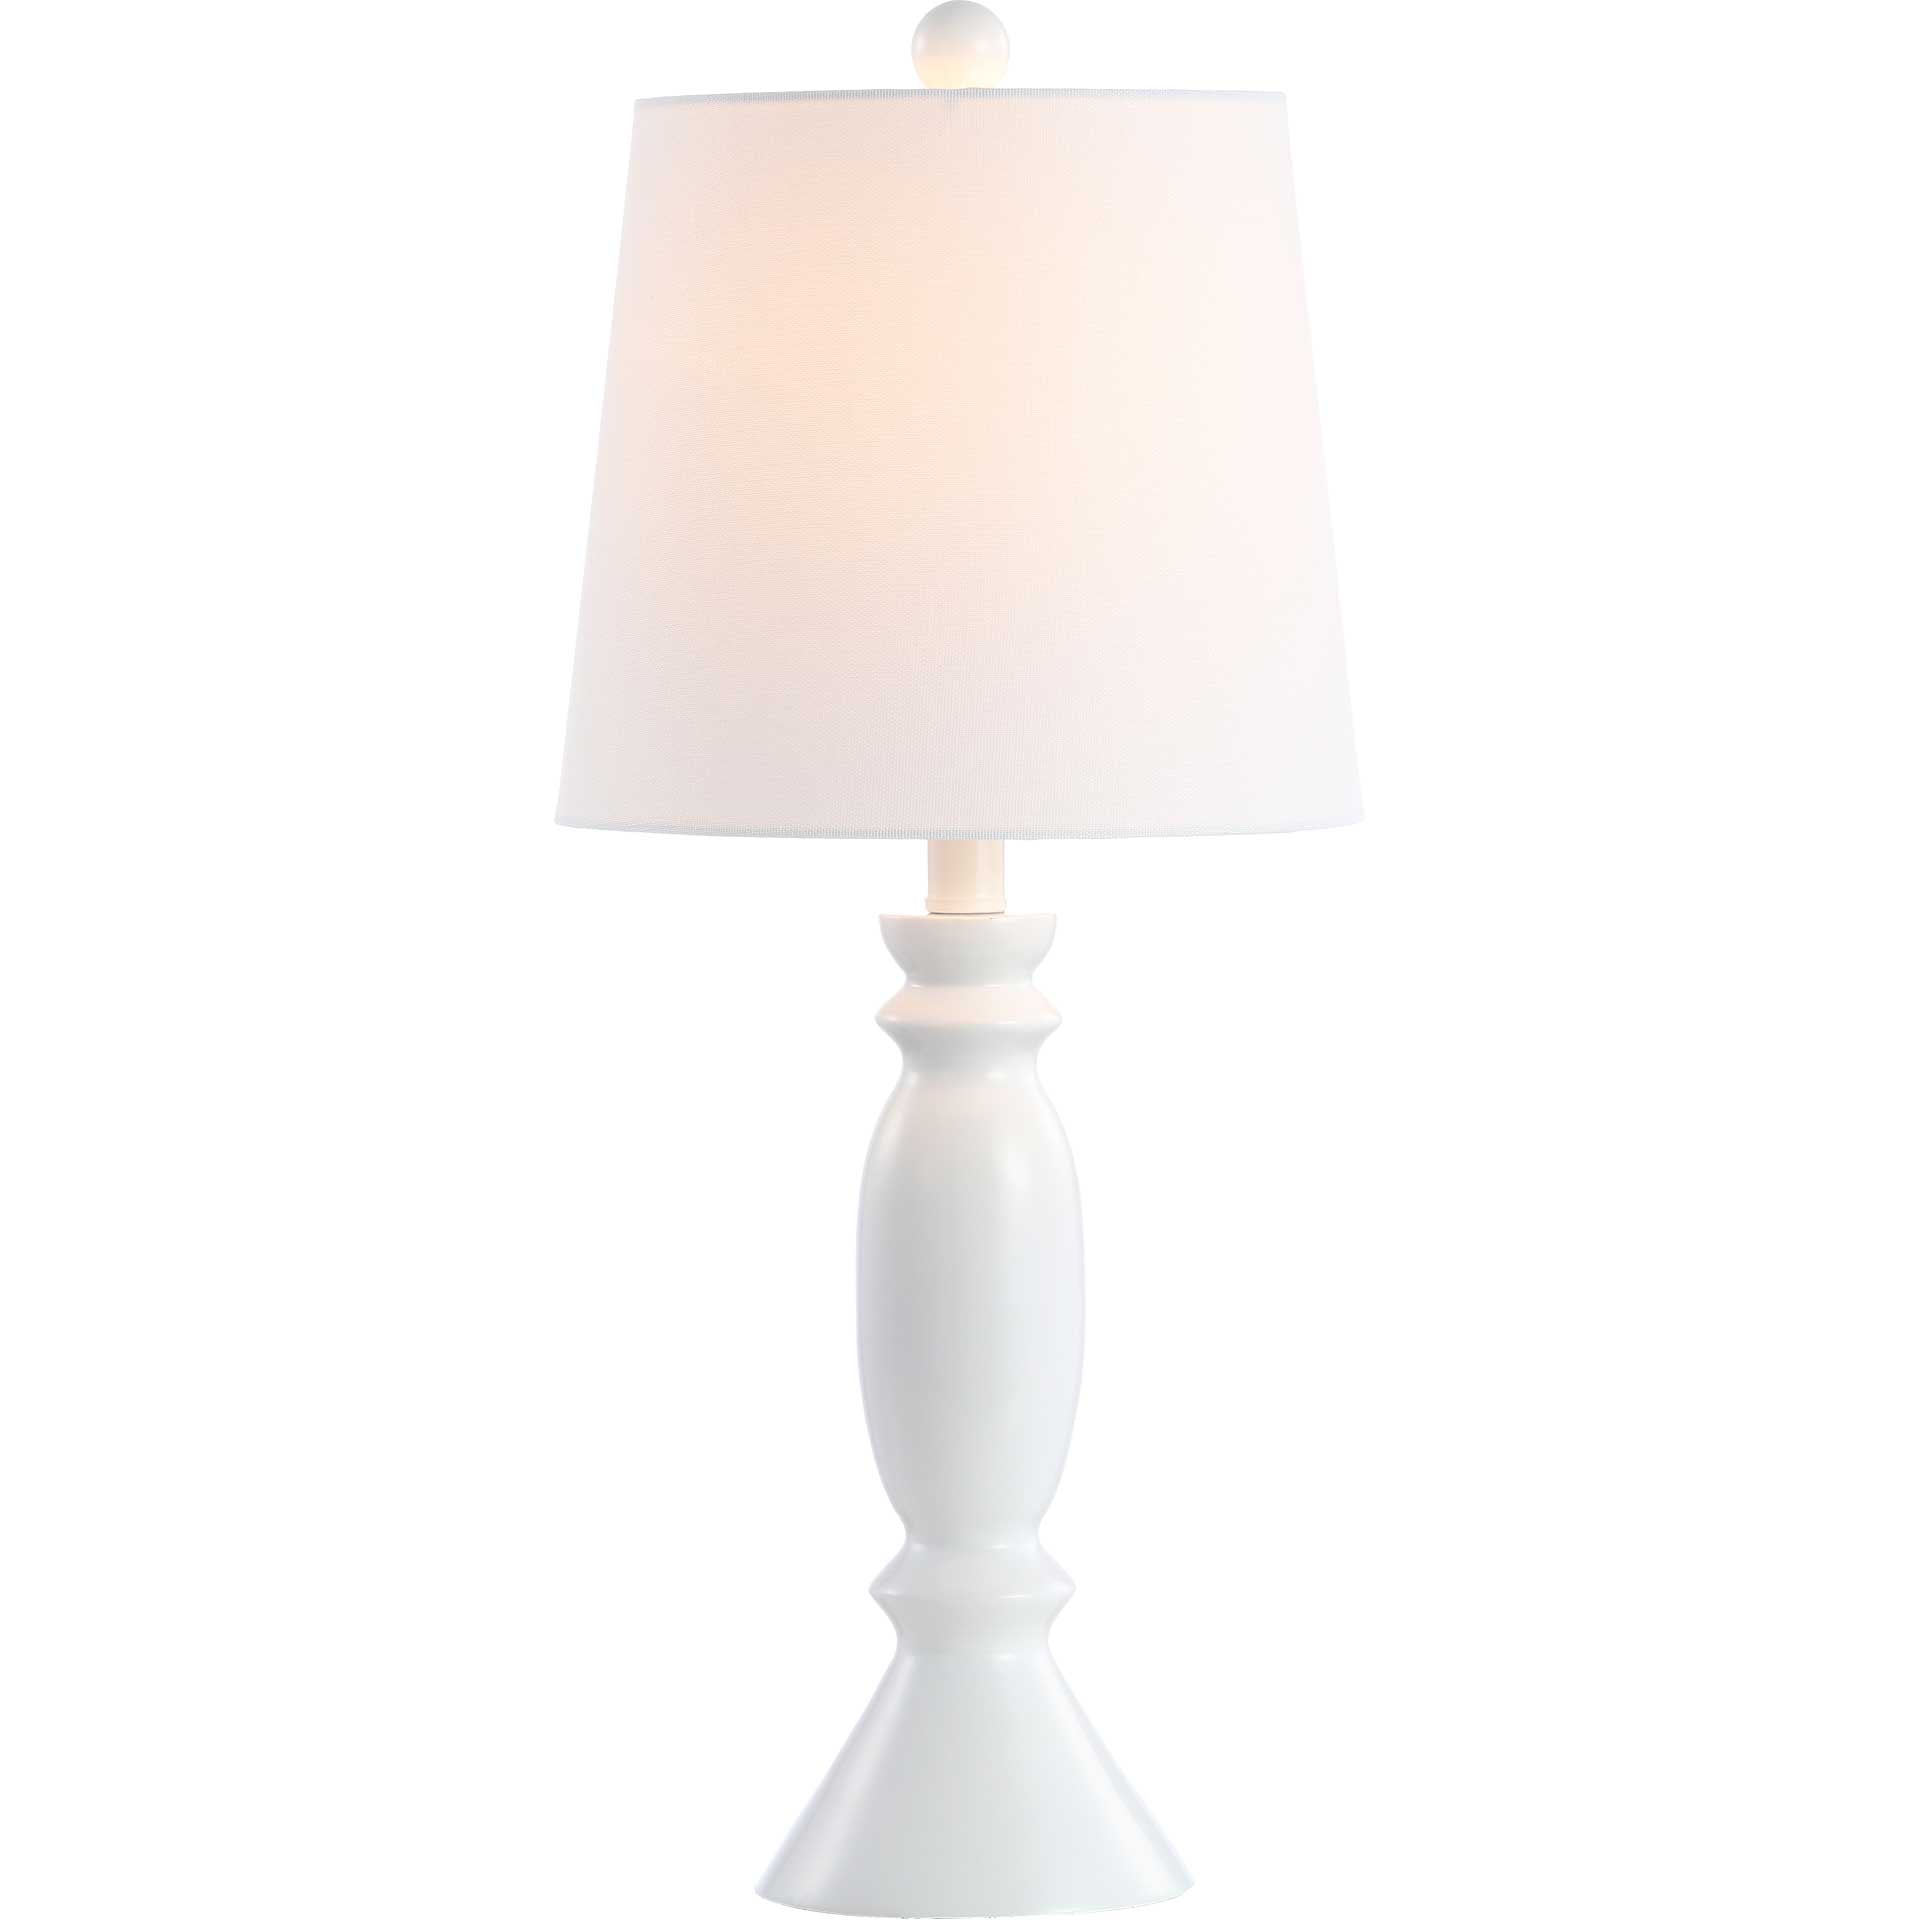 King Table Lamp White